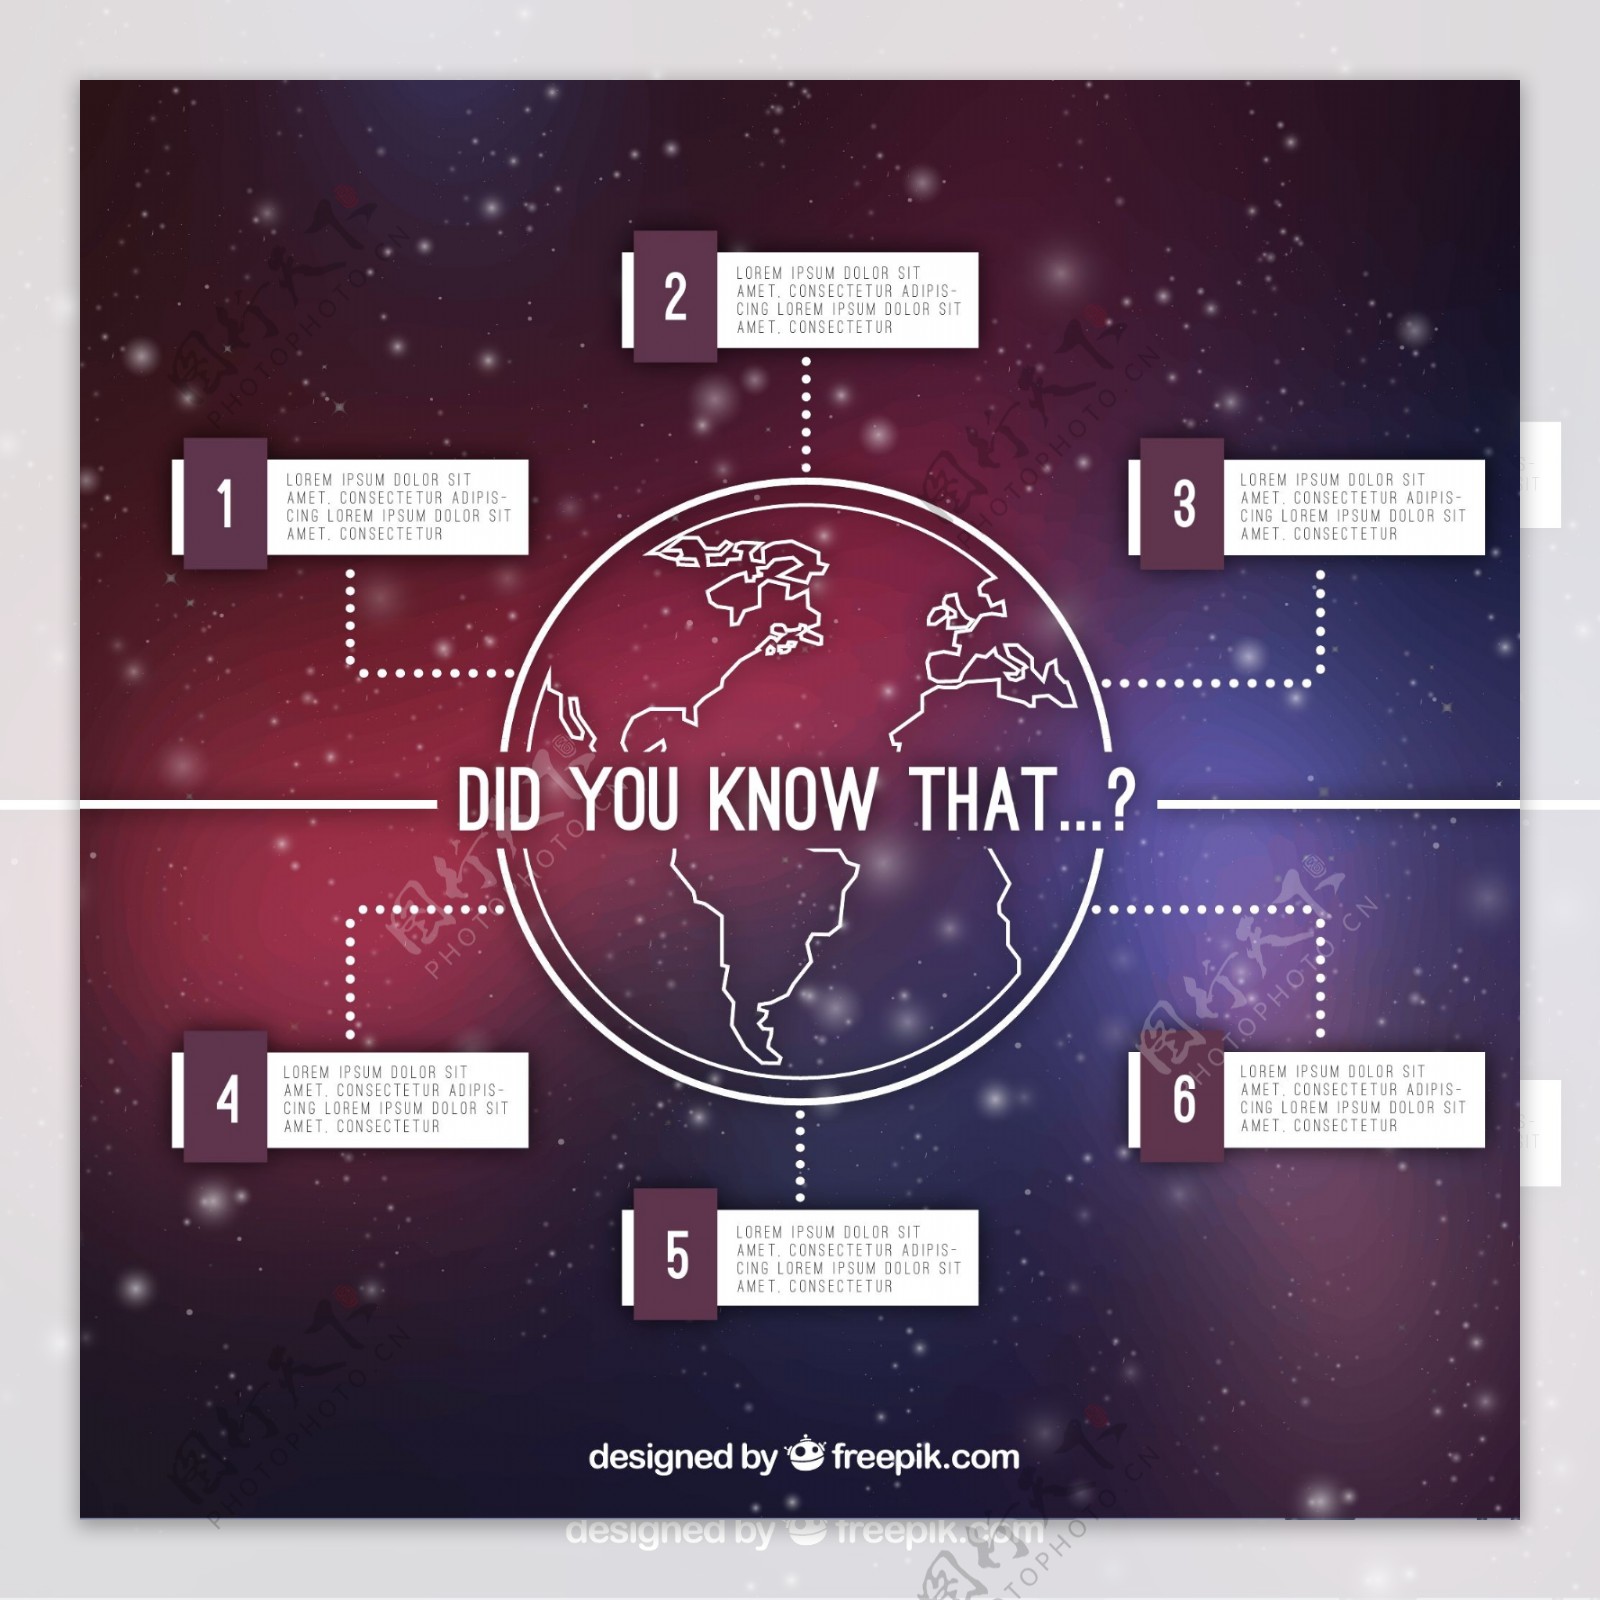 地球信息图表